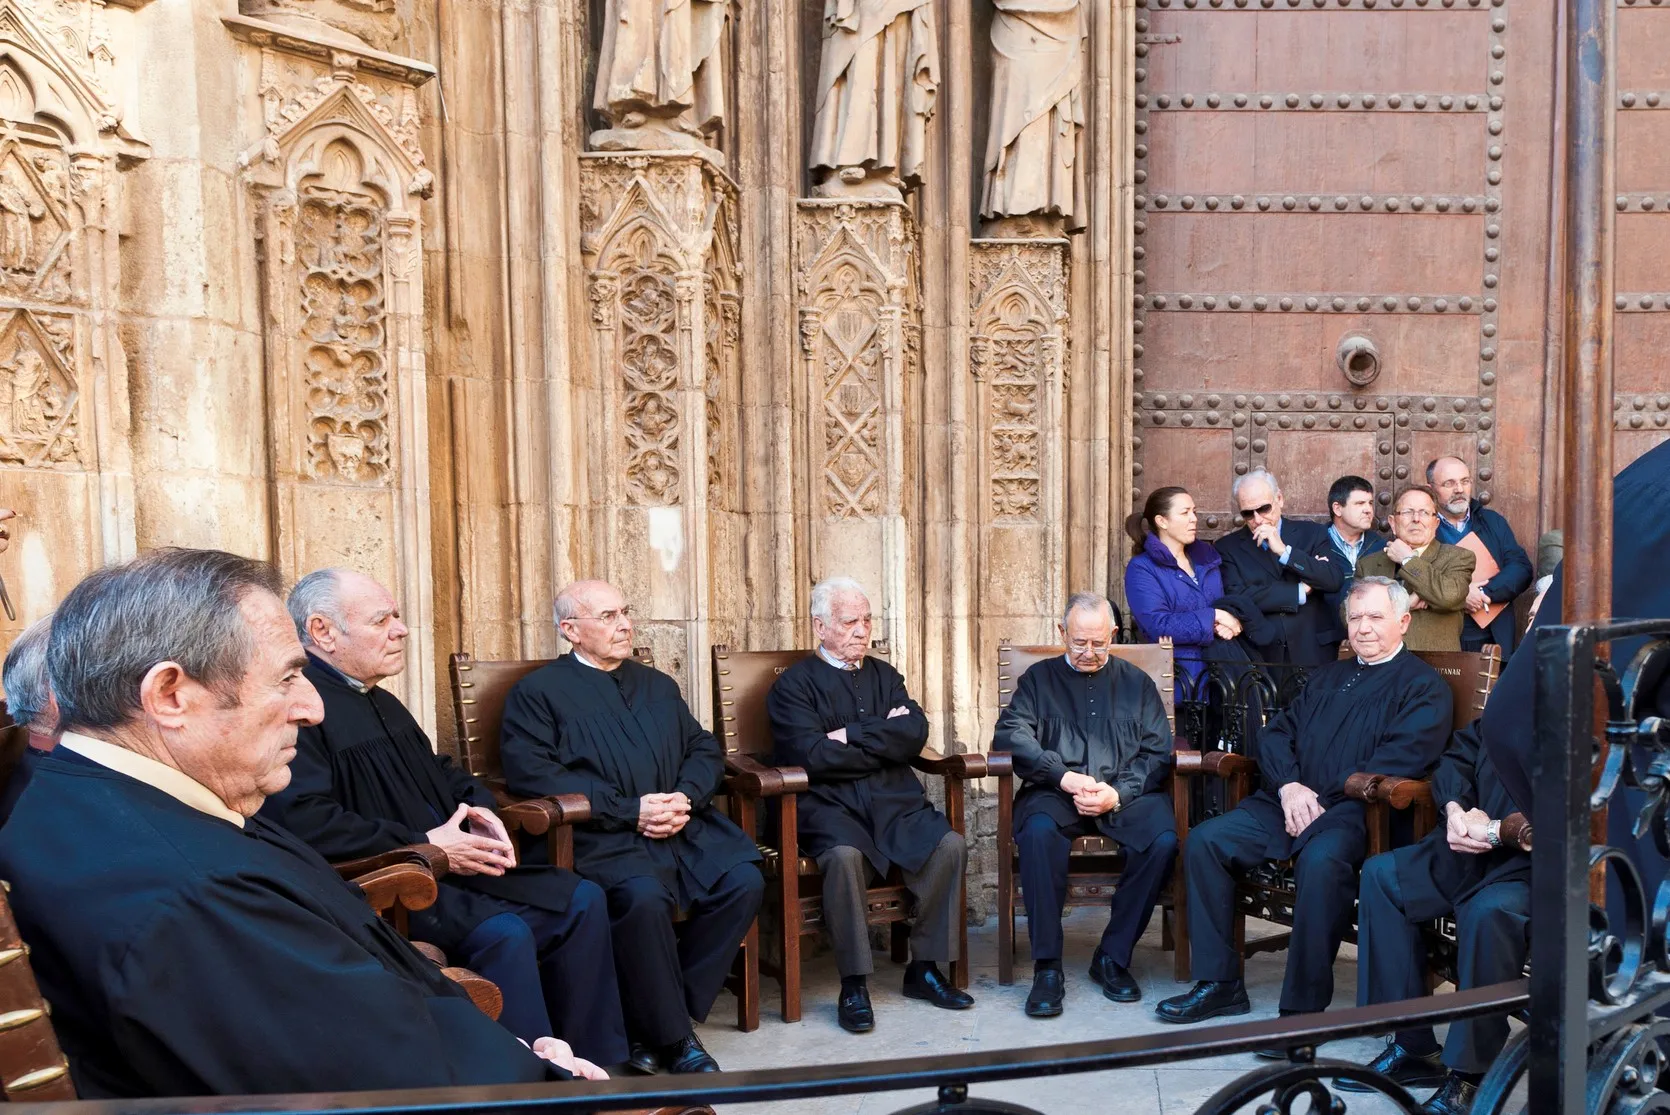 Les juges du Tribunal de las Aguas sur le seuil de la Porte des Apôtres de la cathédrale Santa María de Valence, Espagne © iStock / fotoVoyager 